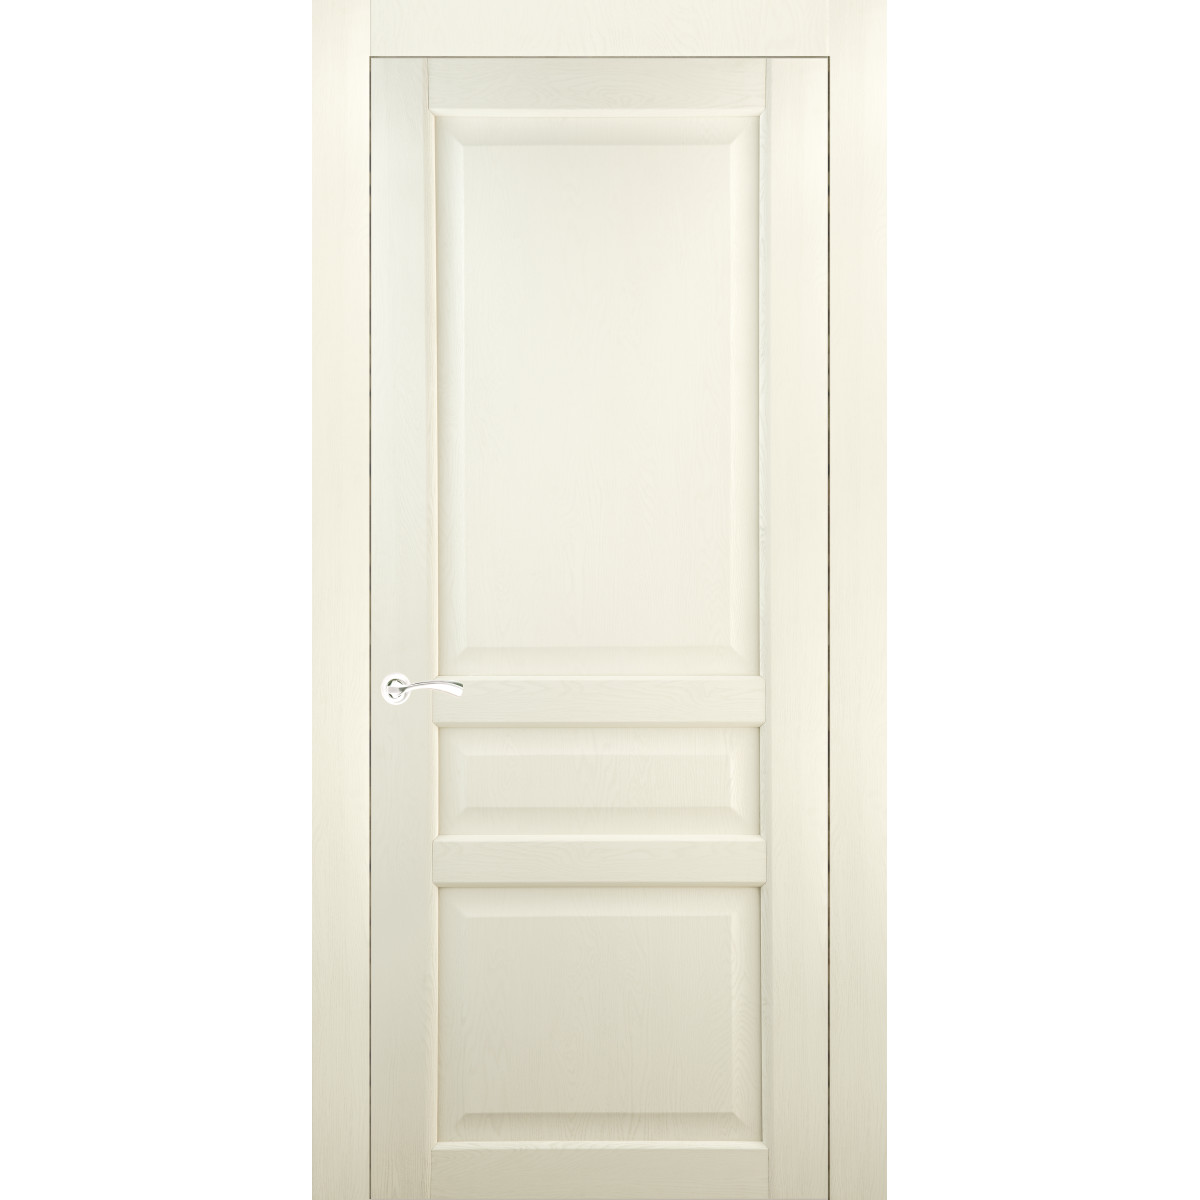 Дверь межкомнатная глухая Artens Мария 90x200 см, ПВХ, цвет айвори, с замком в комплекте